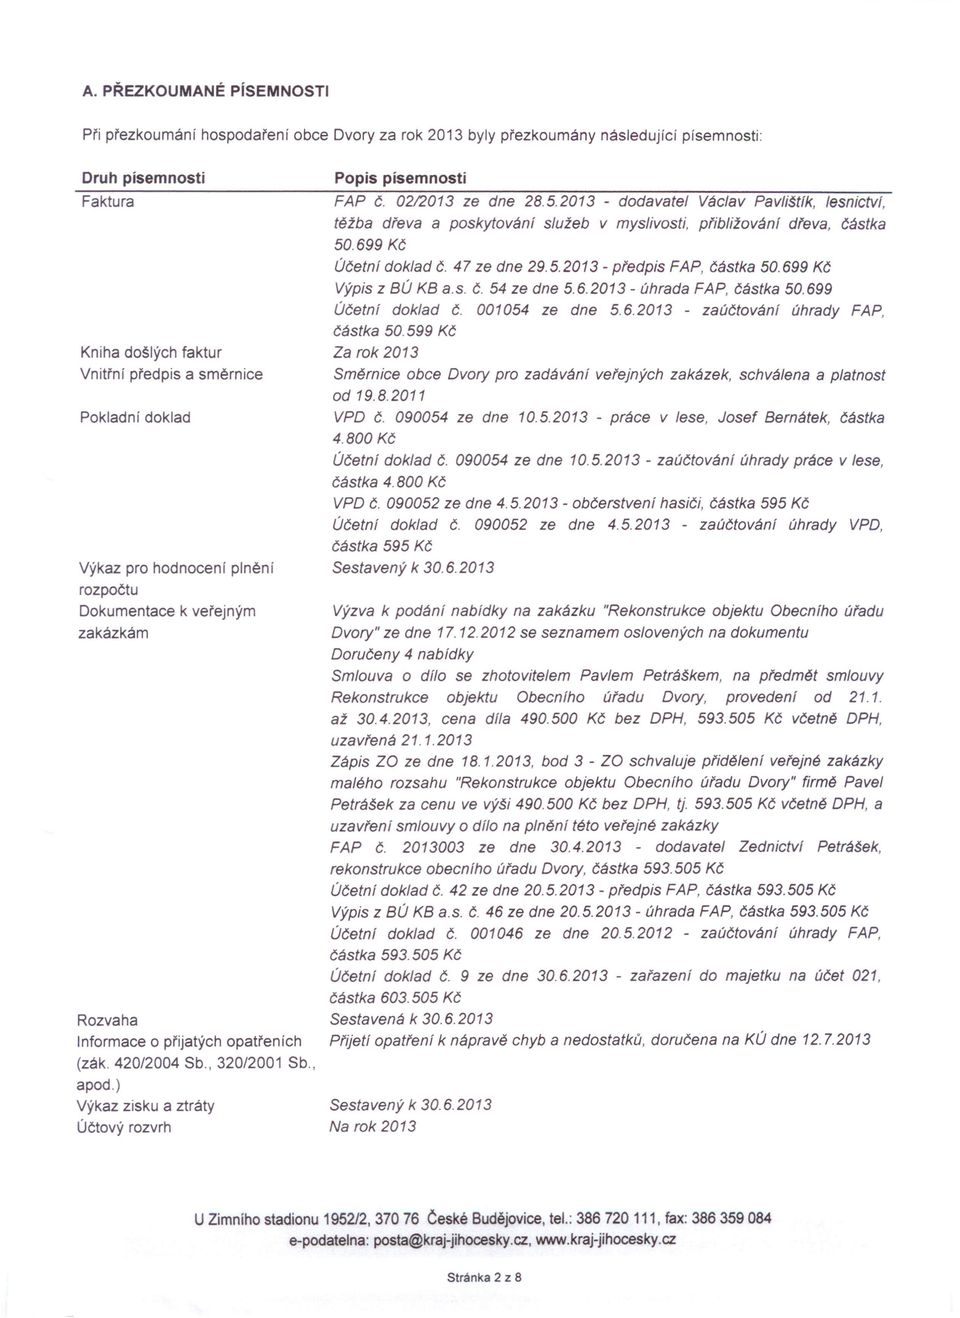 ) Výkaz zisku a ztráty Účtový rozvrh Popis písemnosti FAP Č. 0212013 ze dne 28.5.2013 - dodavatel Václav Pavlištík, tesnictvt.